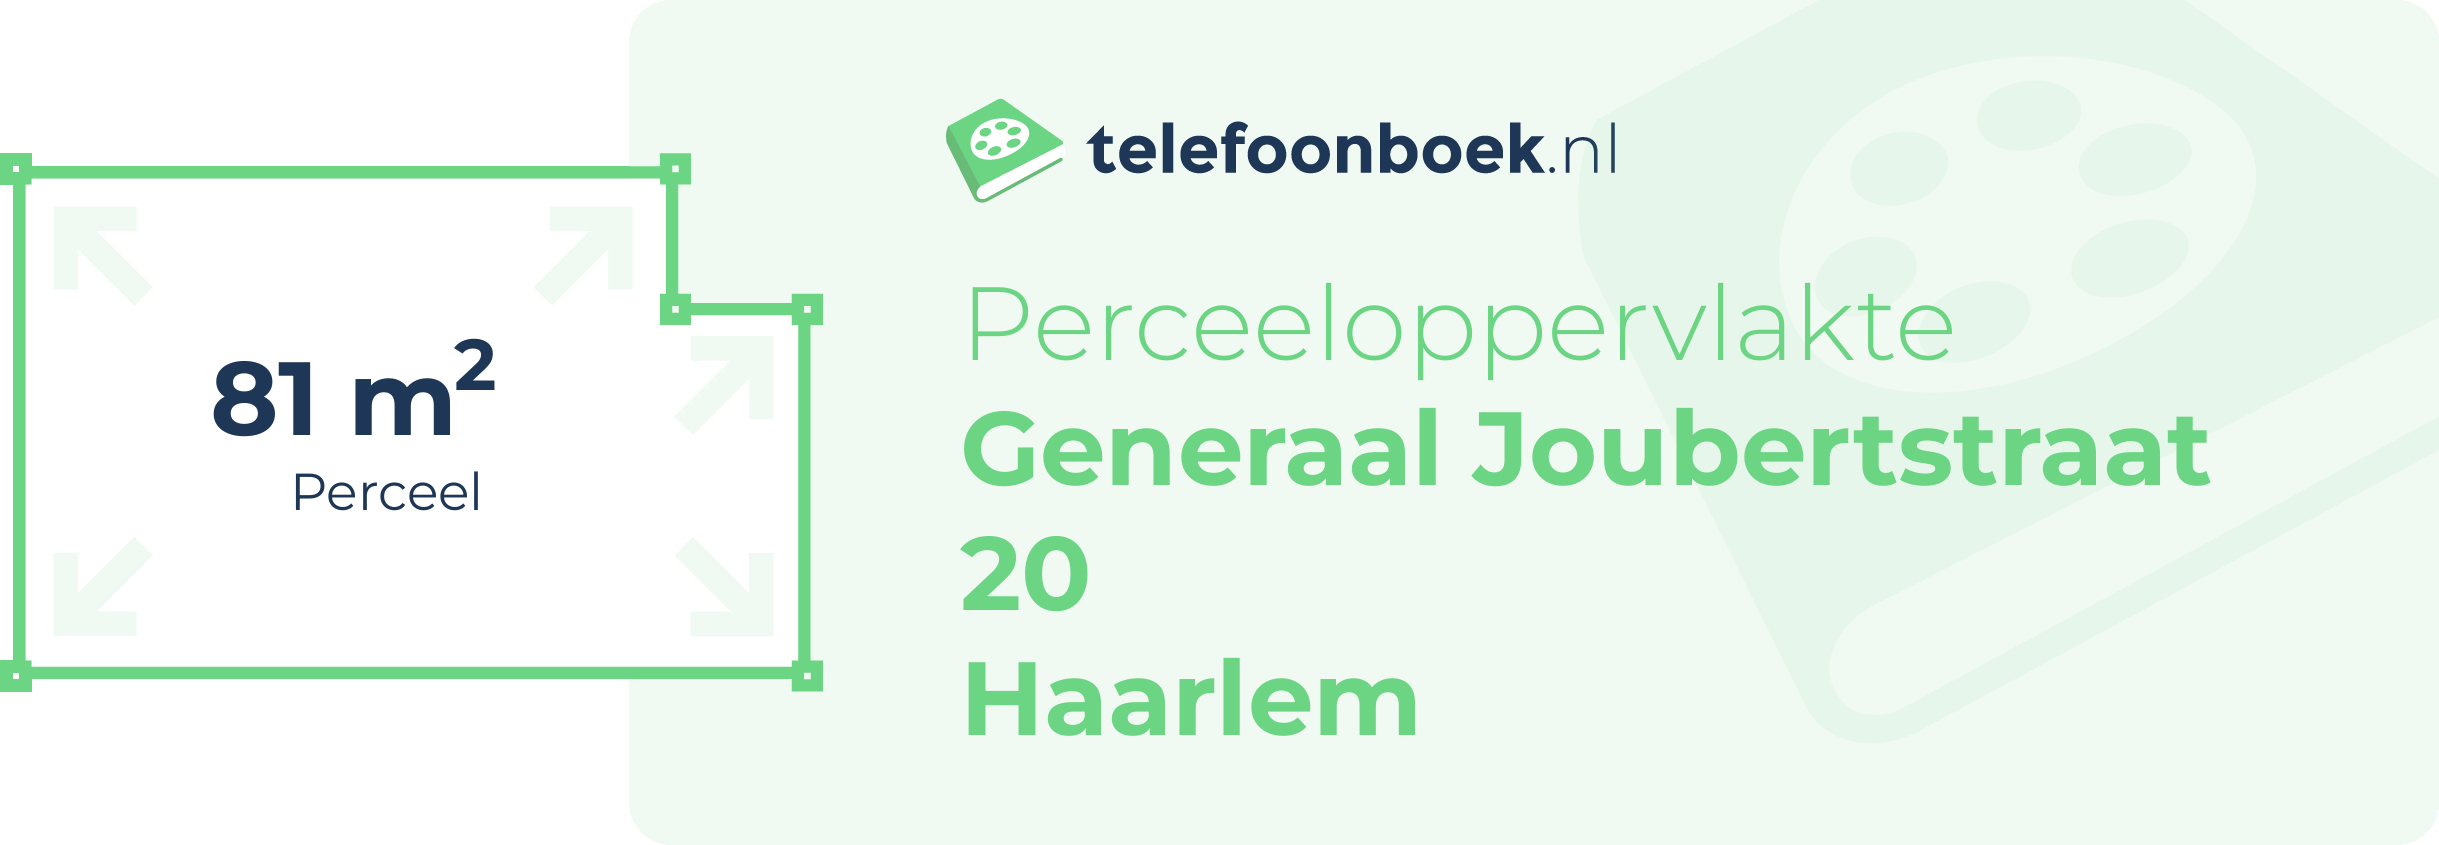 Perceeloppervlakte Generaal Joubertstraat 20 Haarlem